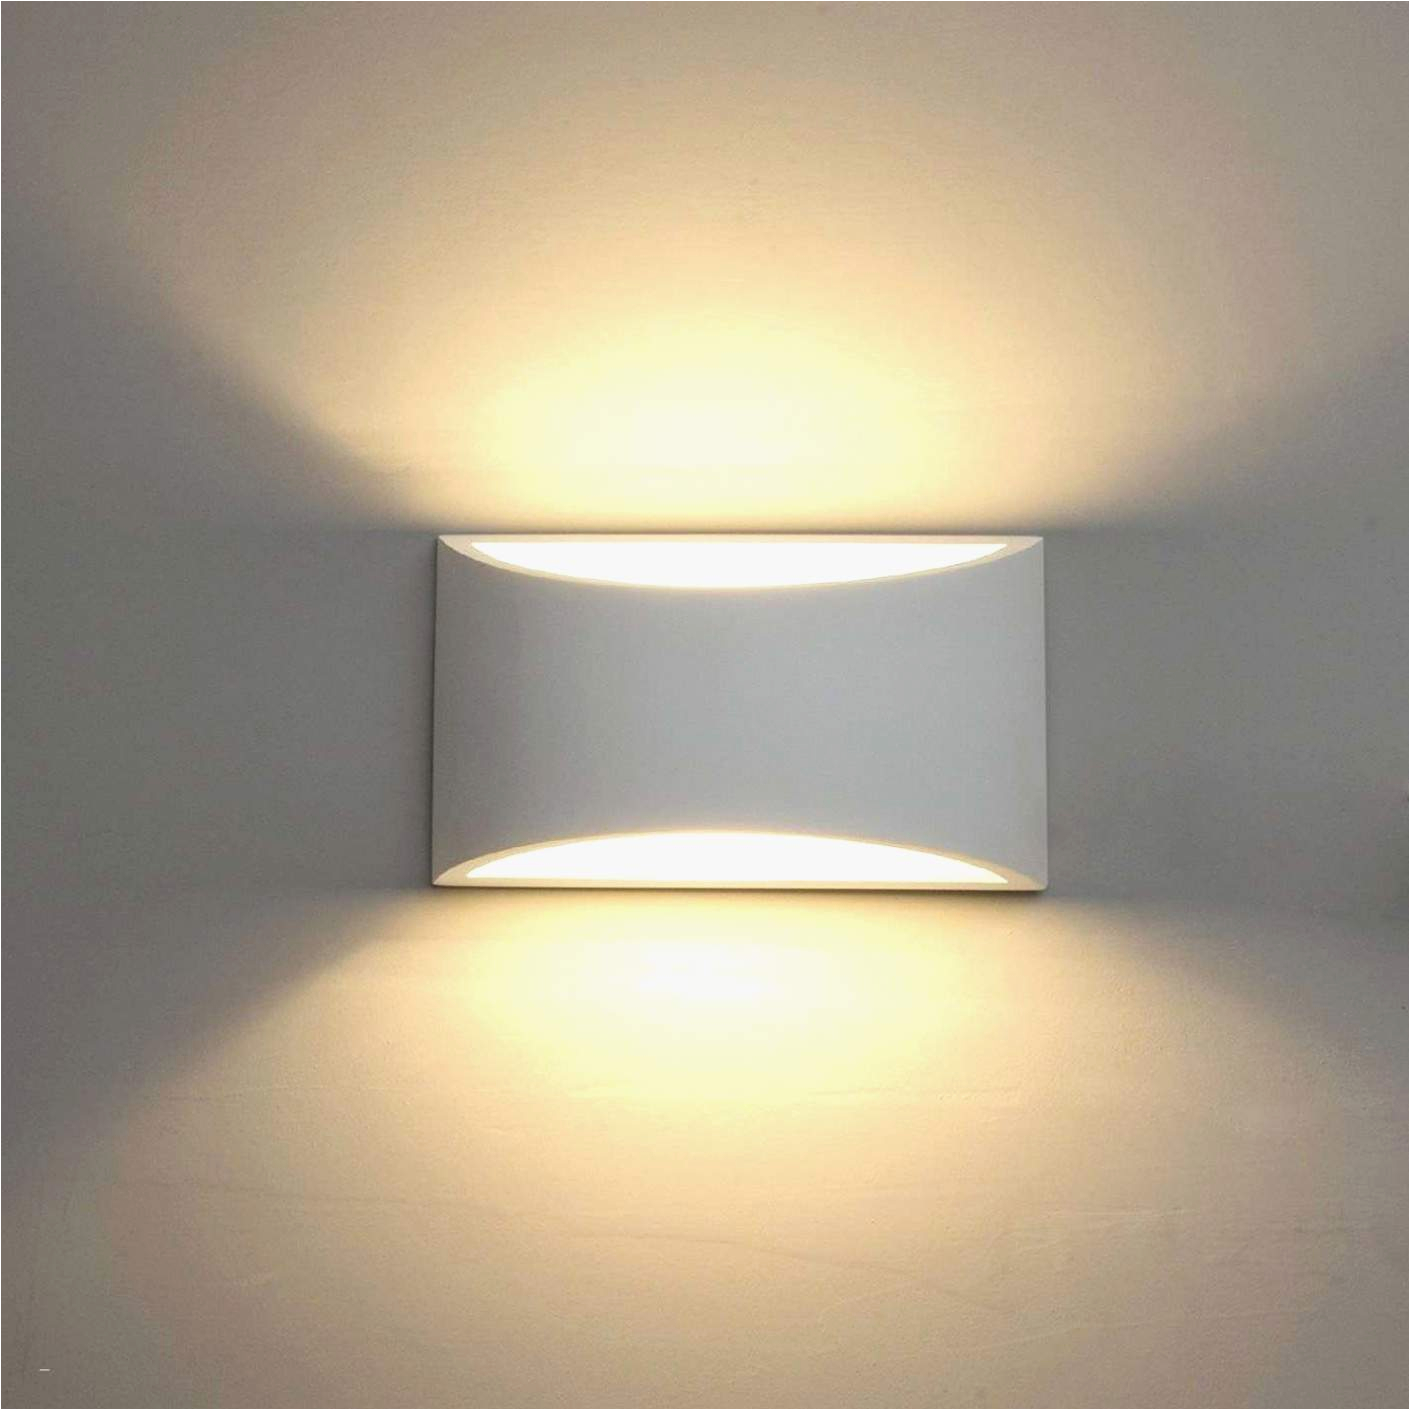 wohnzimmer leuchte schon wohnzimmer lampe konzept tipps von experten of wohnzimmer leuchte